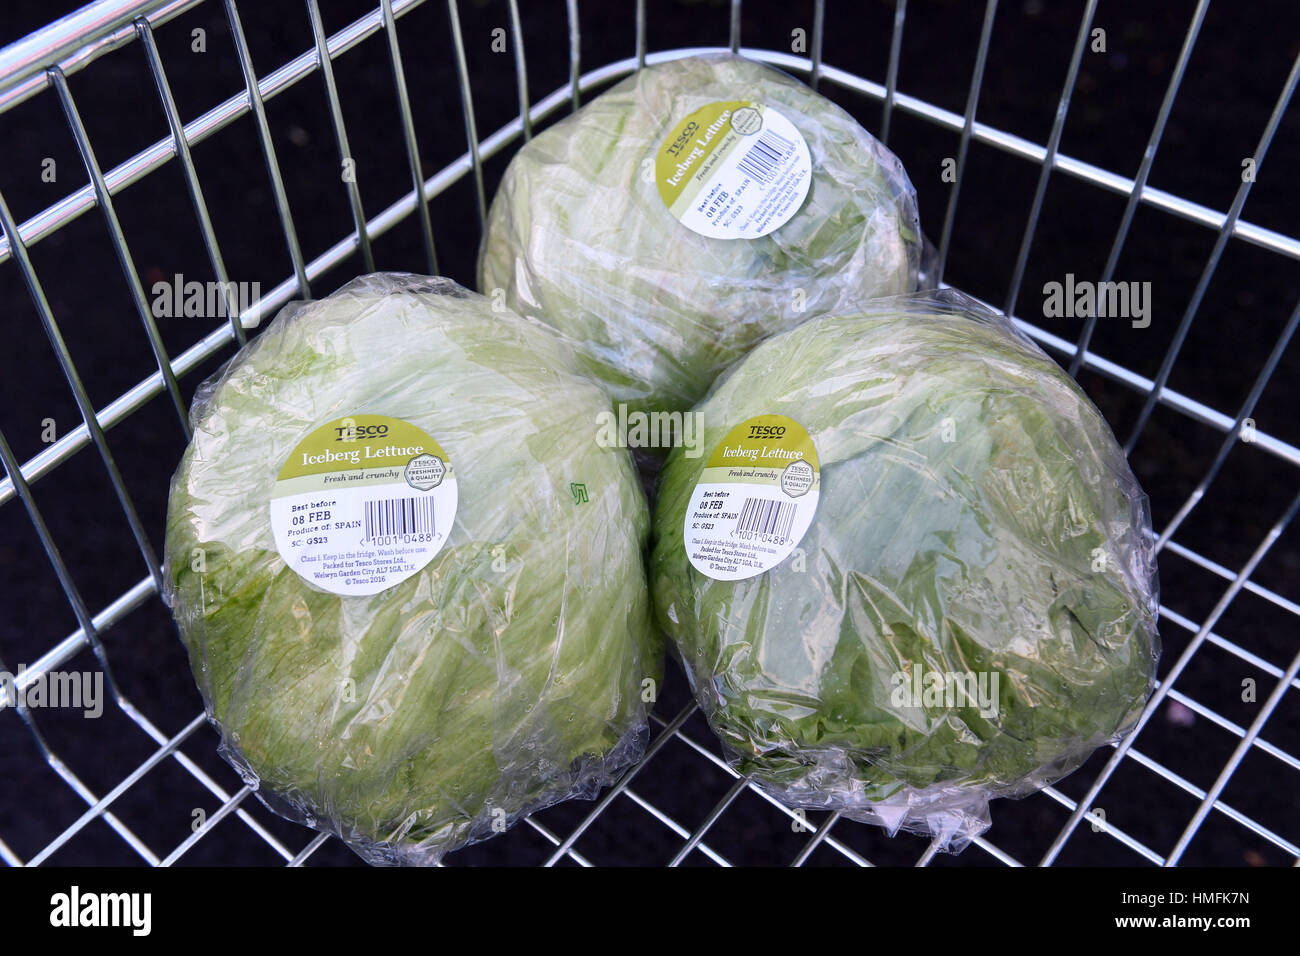 Der Kauf von Eisbergsalat ist auf drei pro Kunde in einem Tesco-Geschäft in Kennington, London, beschränkt, da der Salat zum letzten Grundnahrungsmittel wurde, das der europäischen Gemüsekrise zum Opfer fiel. Stockfoto